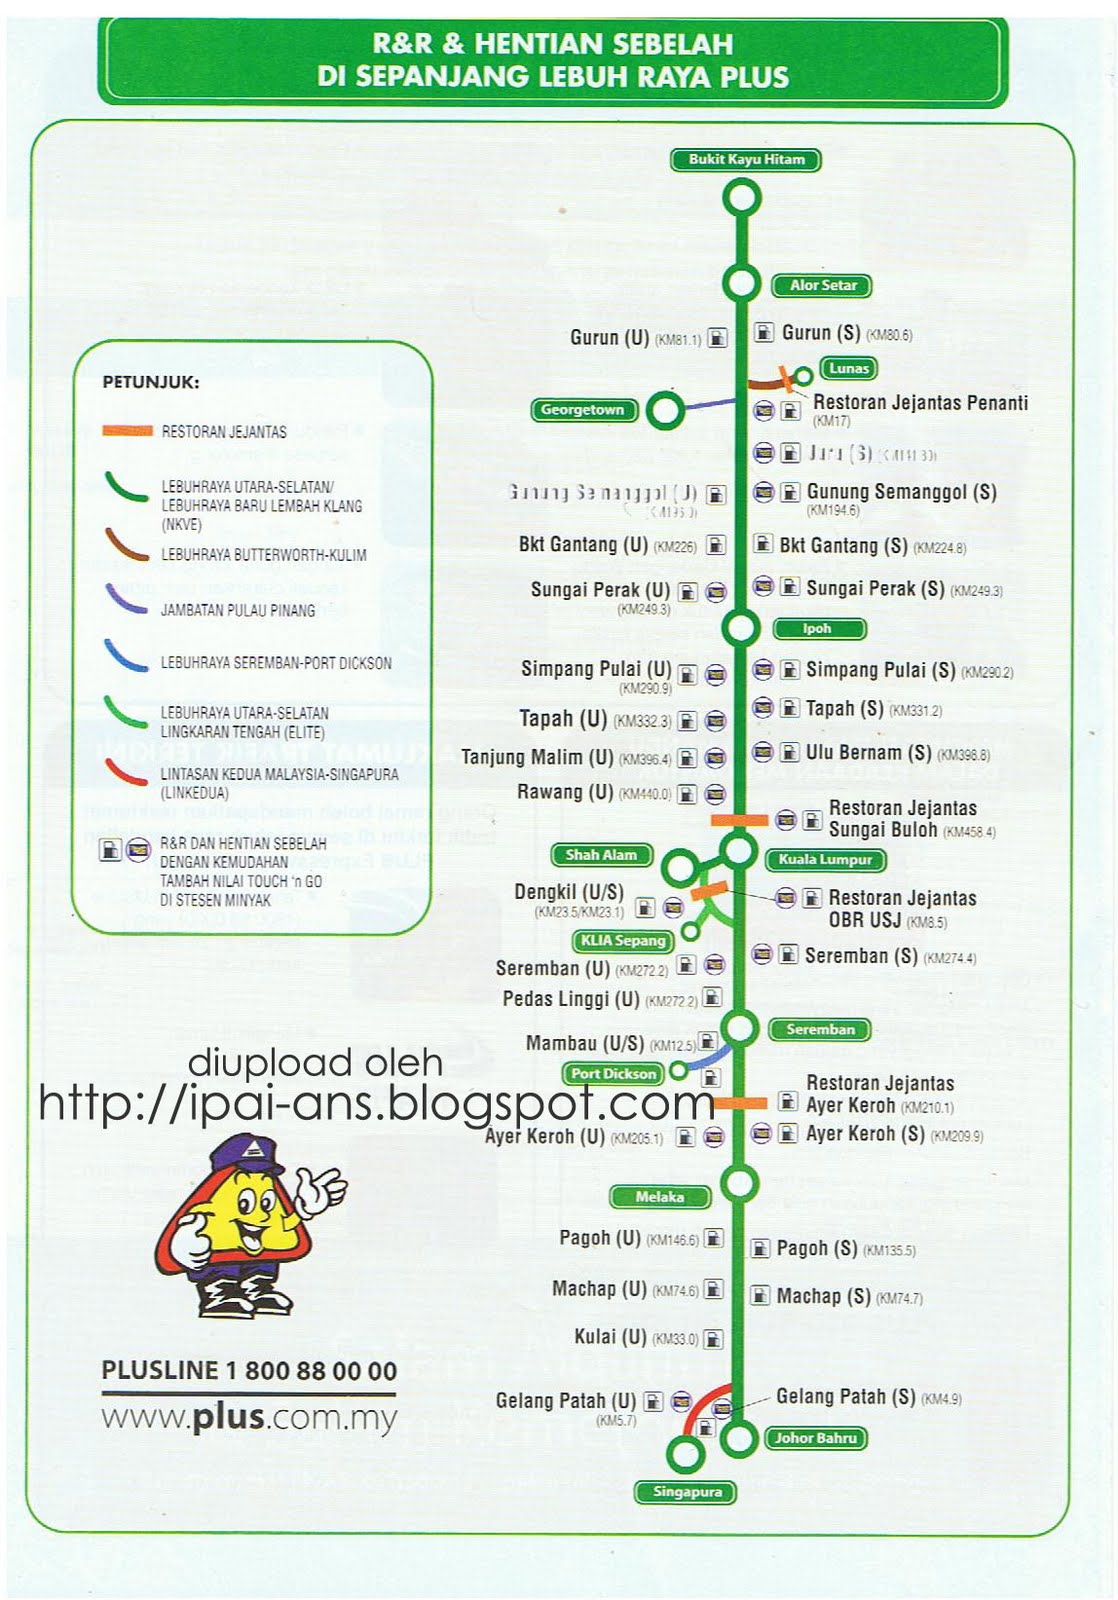 PLUS Expressway Berhad | Senarai R&R Hentian Sebelah Di ...